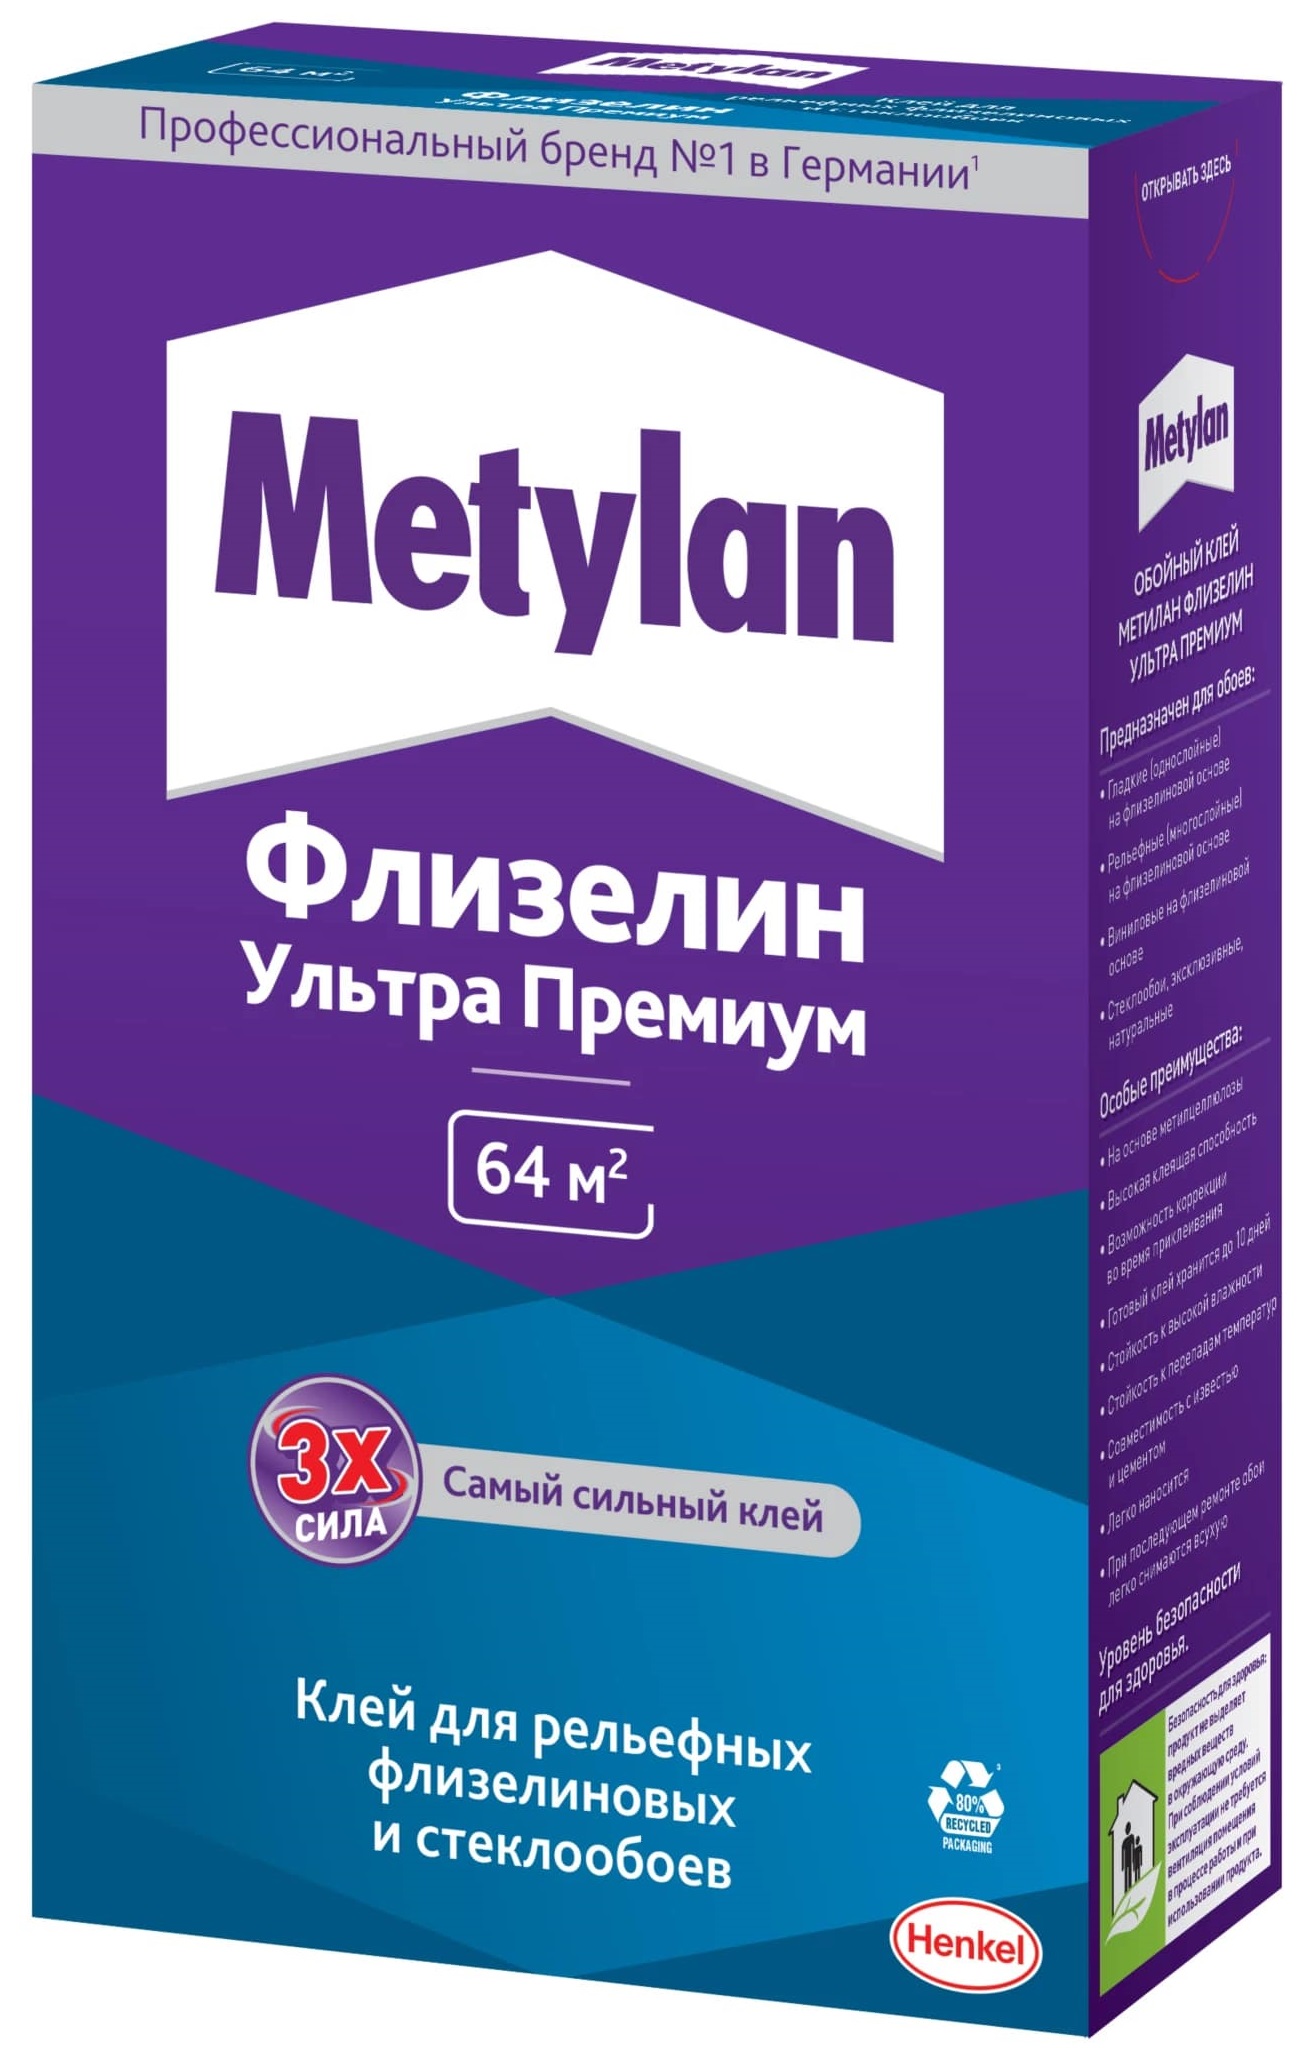 Клей обойный Methylan Флизелин Ультра Премиум для рельефных флизелиновых и стеклообоев 500г